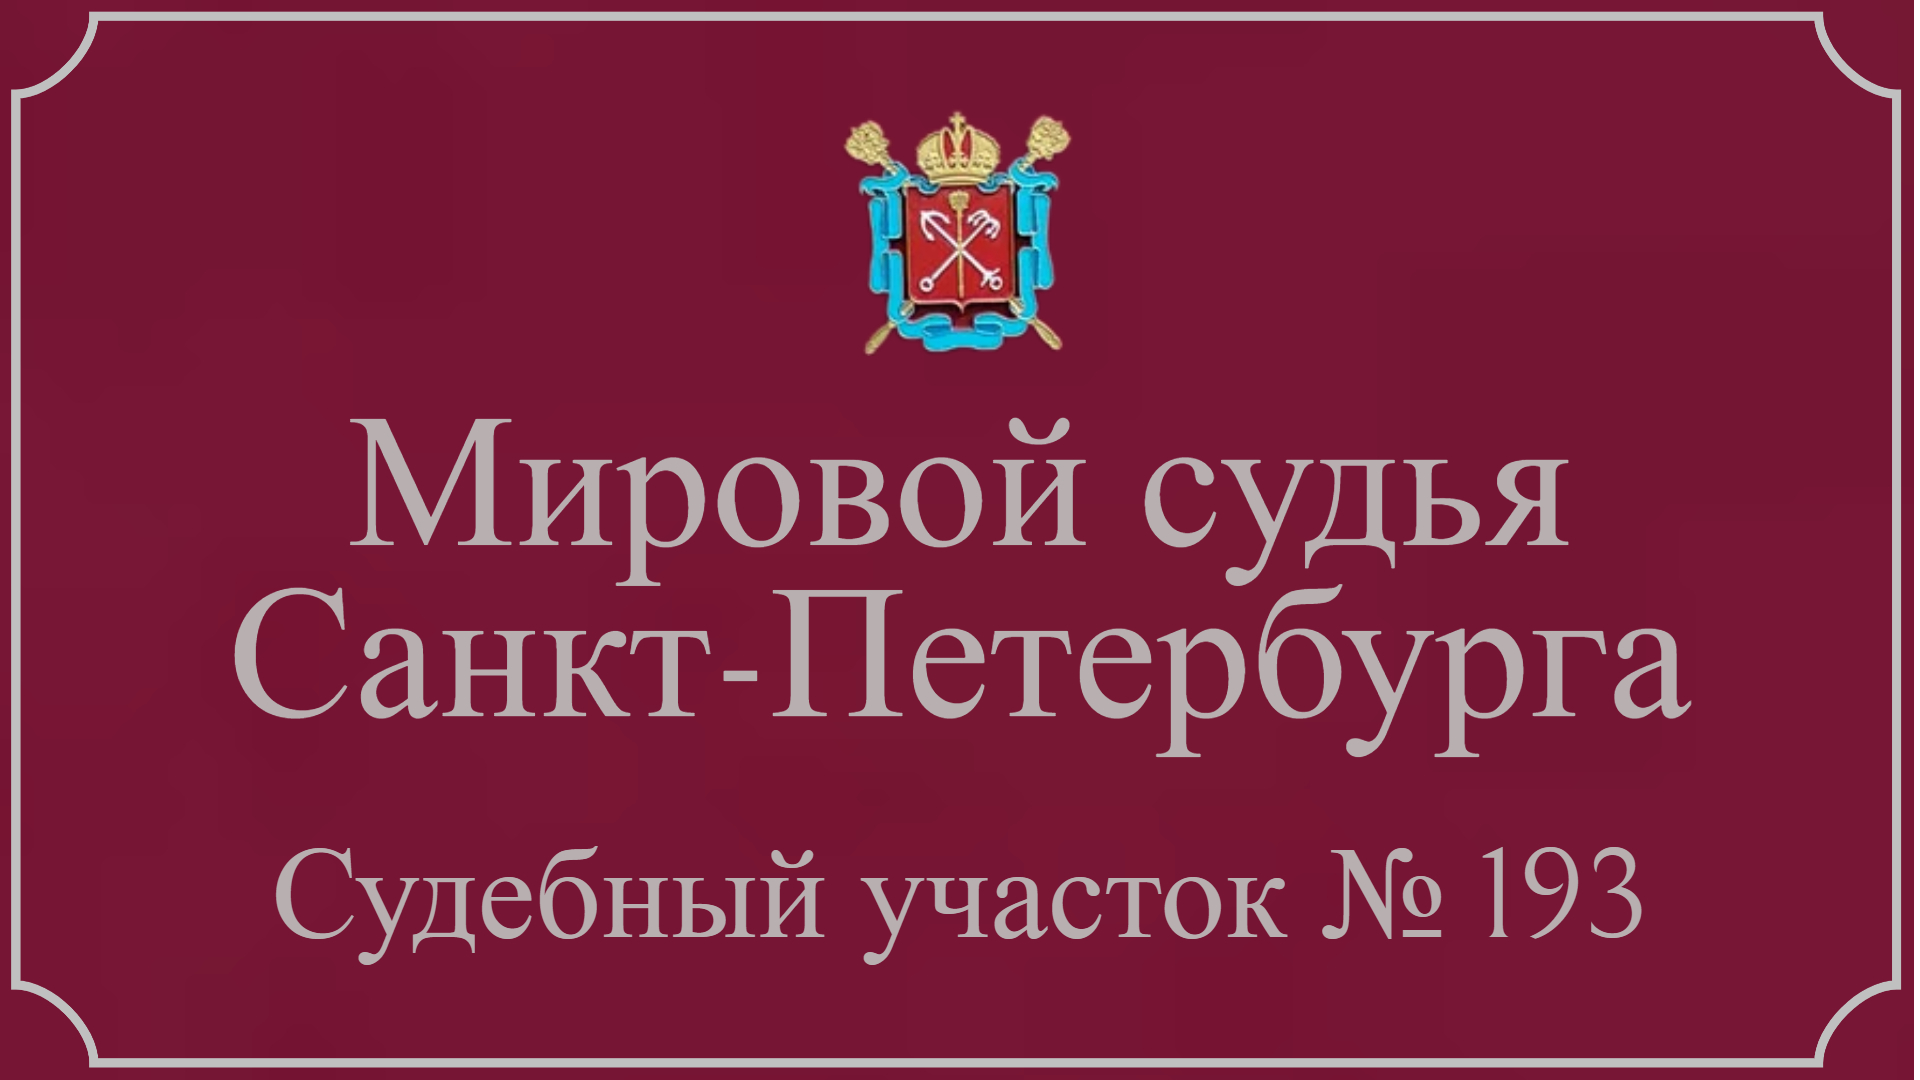 Информация по 193 судебному участку в Санкт-Петербурге.